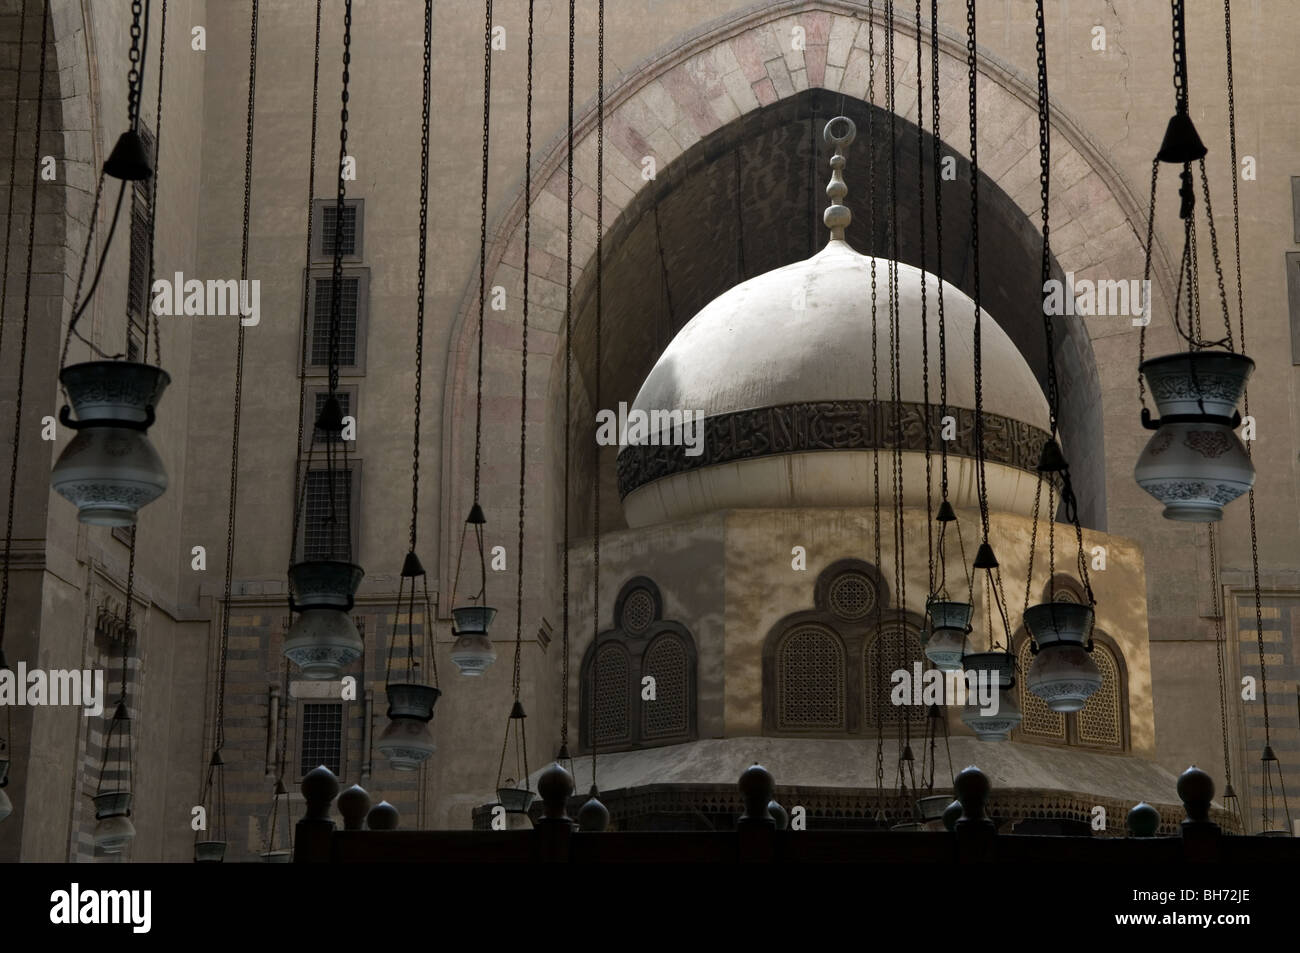 Il magnifico Sultan Moschea Hassan domina lo skyline del vecchio Cairo. Il suo interno è decorato con raffinati dorato e marmo Foto Stock